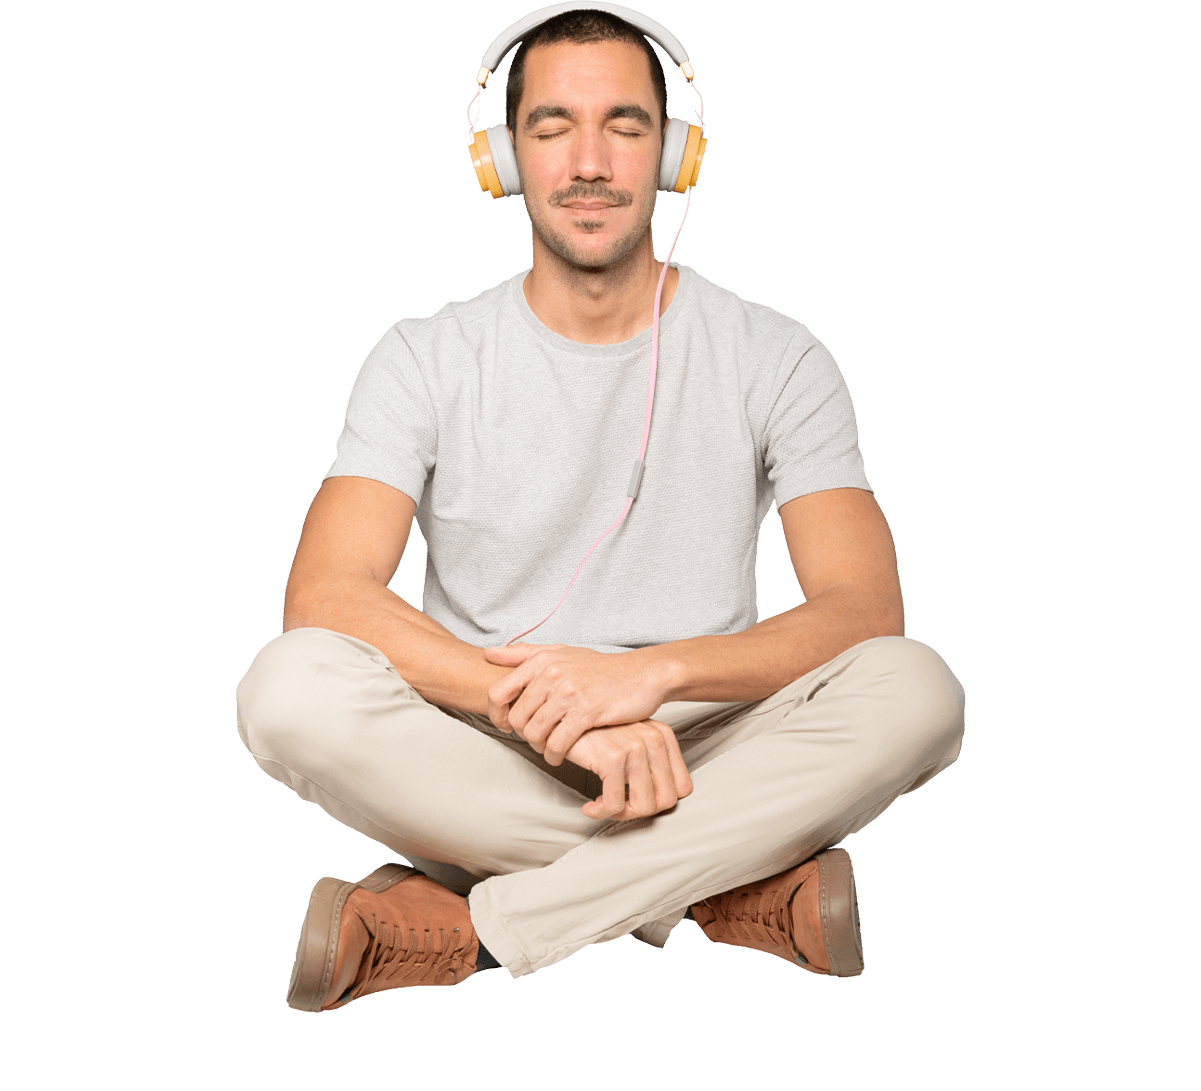 Man meditating with legs crossed wearing headphones